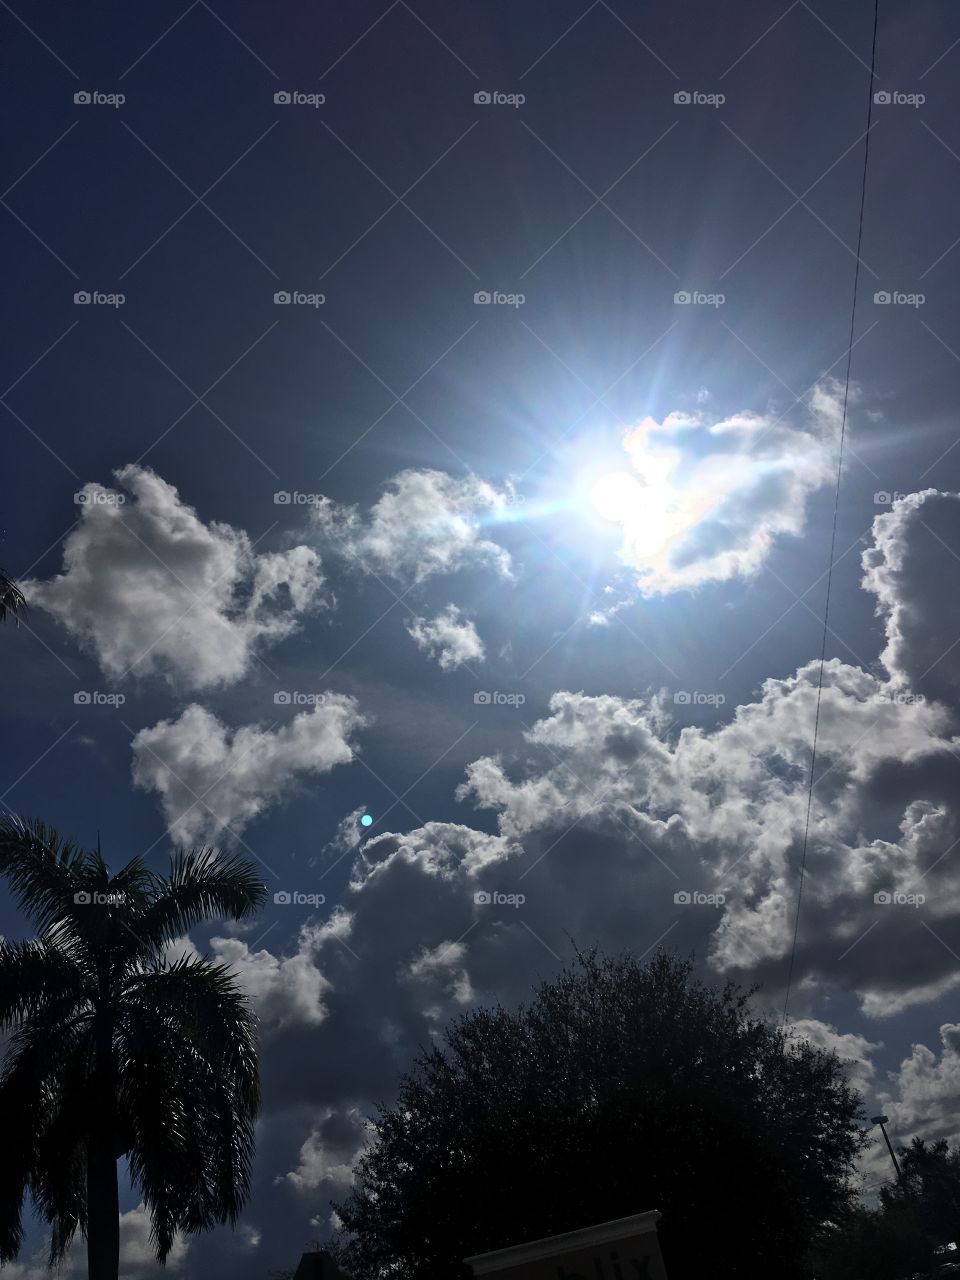 Sun shine blue sky with palm tree